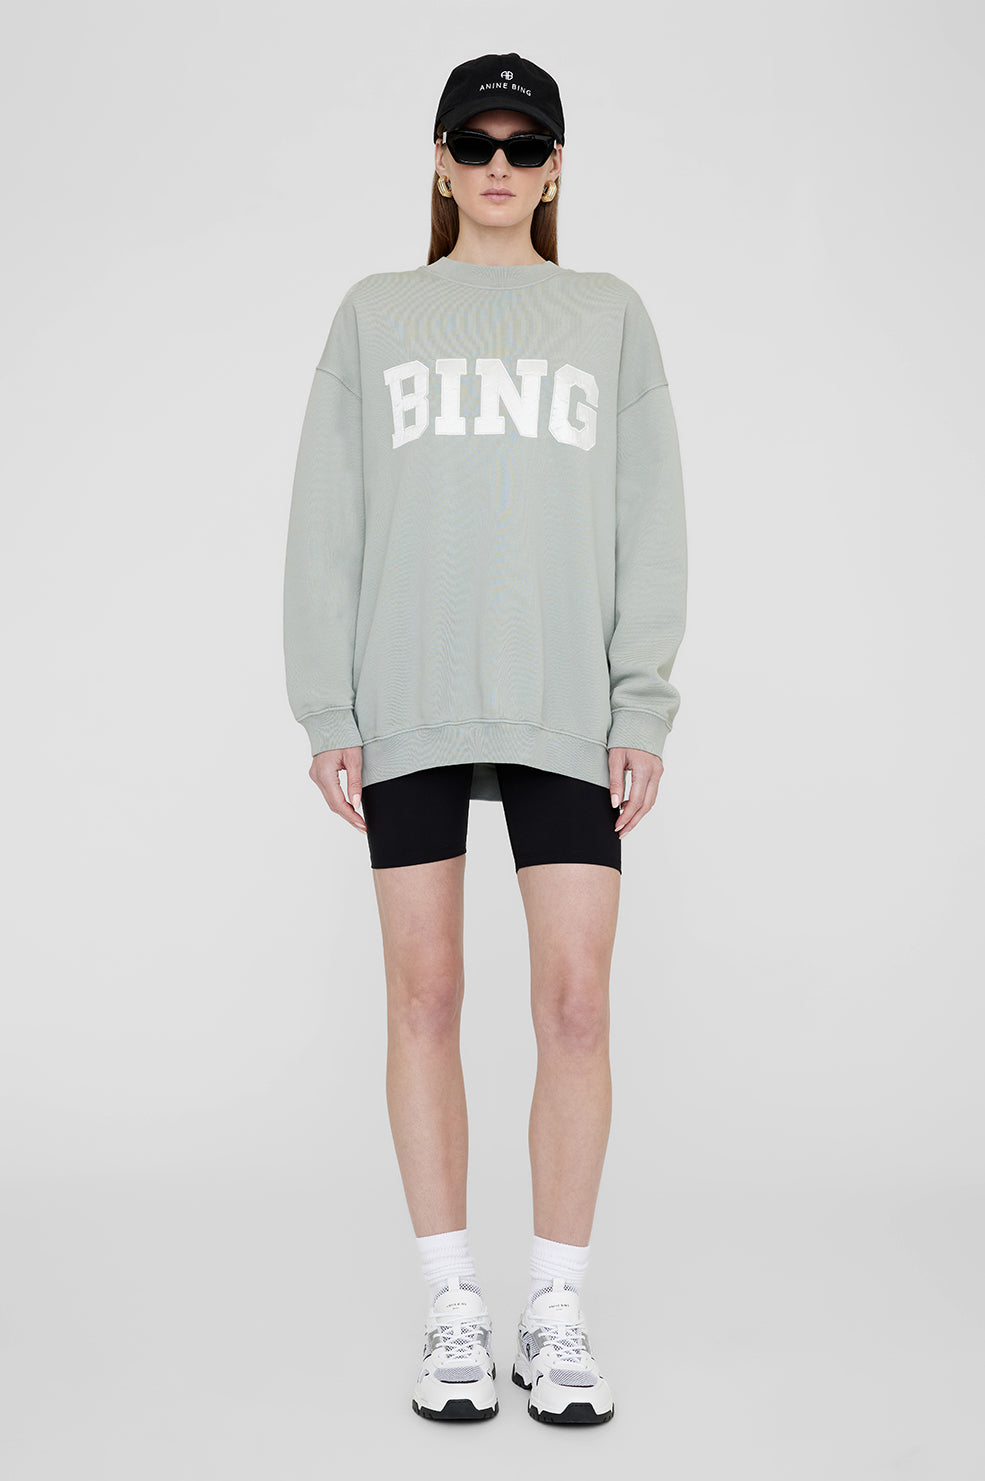 Buy ANINE BING Tyler Sweatshirt online